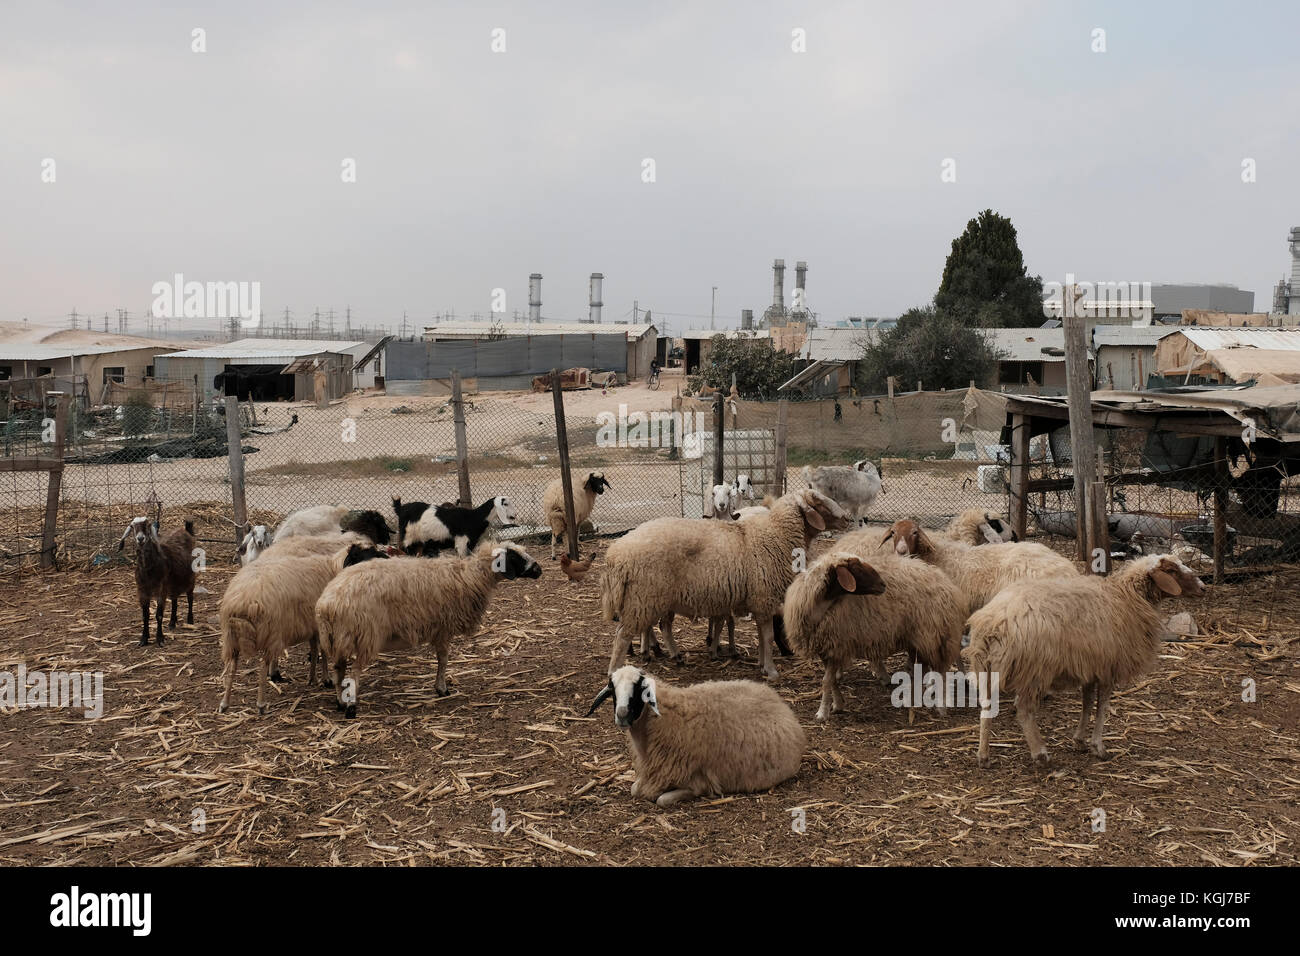 Schafe in einem Korral in einem nicht erkannten Beduinendorf in Wadi al-Na'am in der Negev-Wüste im Süden Israels. Viele Beduinen im Negev leben in Gemeinden, die ohne staatliche Genehmigung gegründet wurden, in diesem Fall wird jede Konstruktion auf dem Gelände als illegal angesehen. Der Staat erteilt Abbruchbefehle gegen Bauvorhaben, die ohne Genehmigung errichtet wurden, aber nicht alles davon befindet sich in nicht anerkannten Dörfern. Einige befinden sich in gesetzlich anerkannten Beduinengemeinschaften. Stockfoto